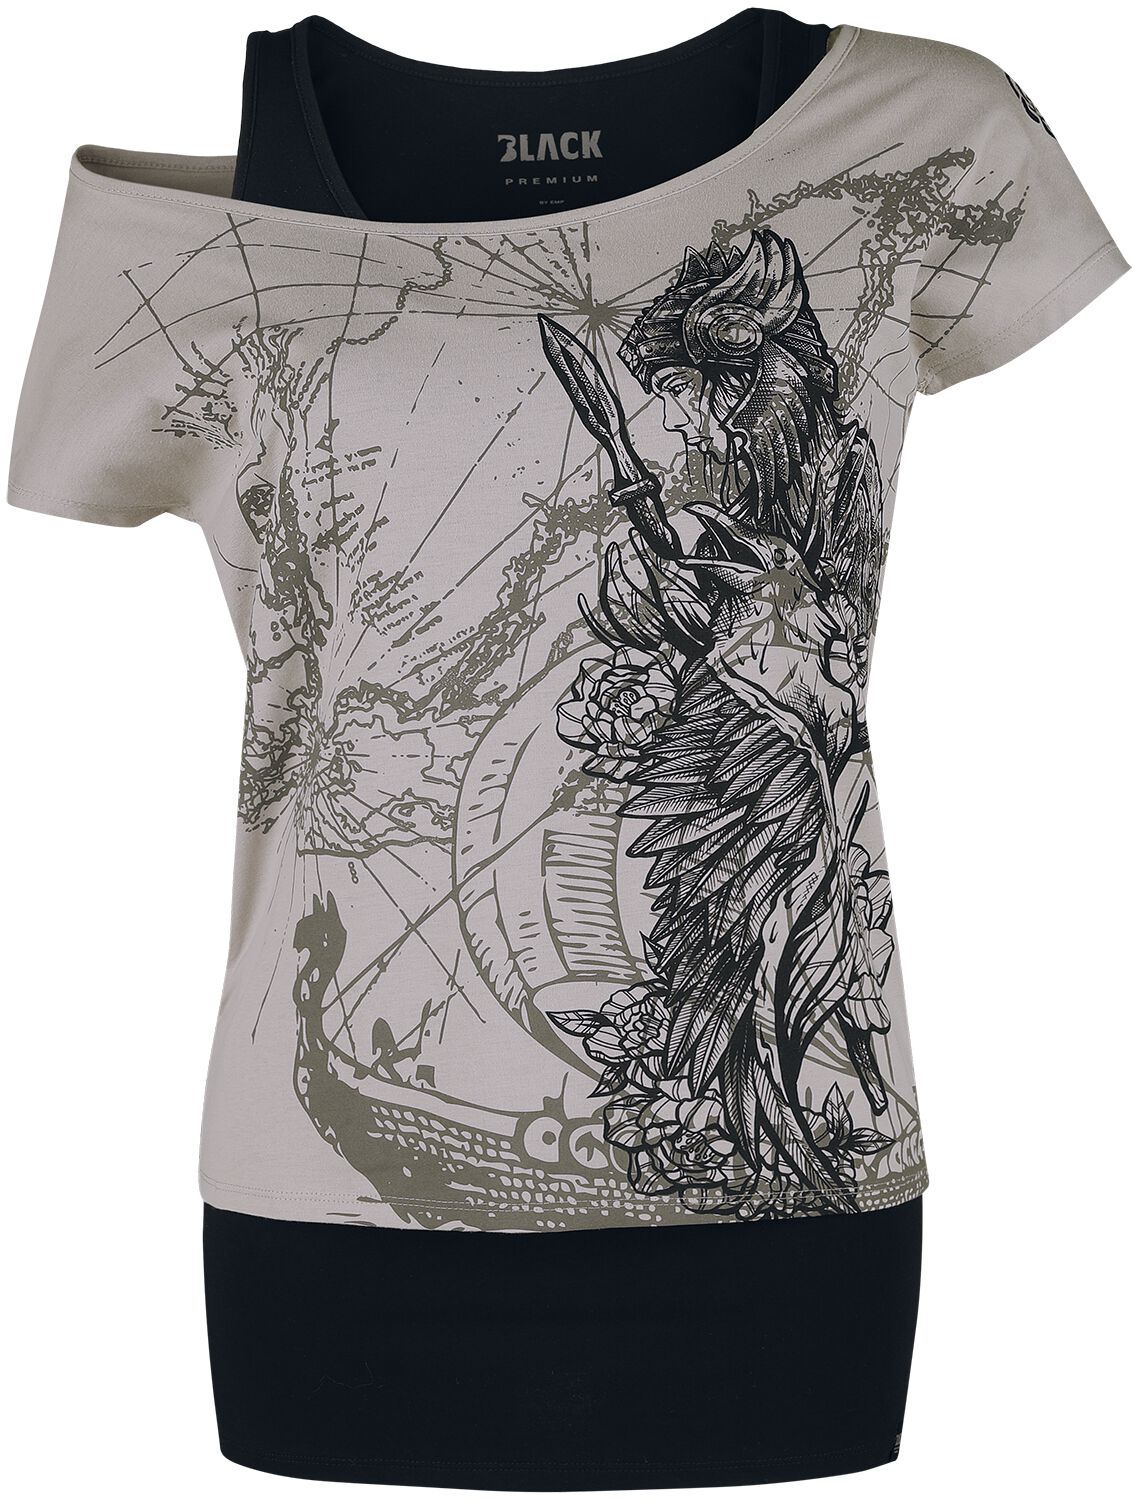 Black Premium by EMP T-Shirt - Double-Layer-T-Shirt mit detailreichem Frontprint - S bis XXL - für Damen - Größe S - grau/schwarz